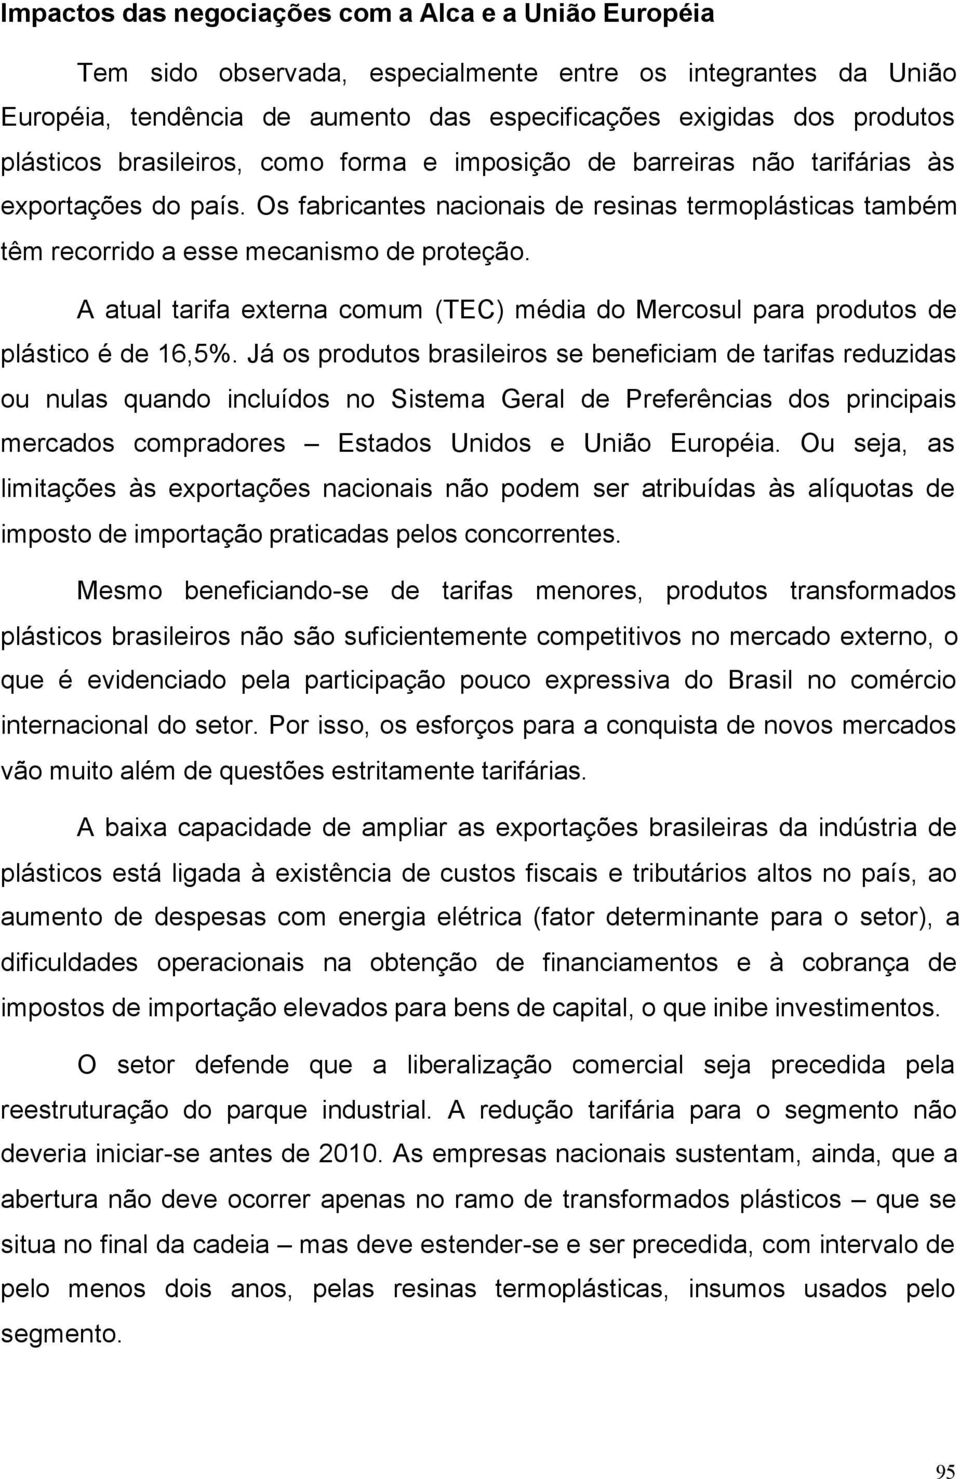 A atual tarifa externa comum (TEC) média do Mercosul para produtos de plástico é de 16,5%.